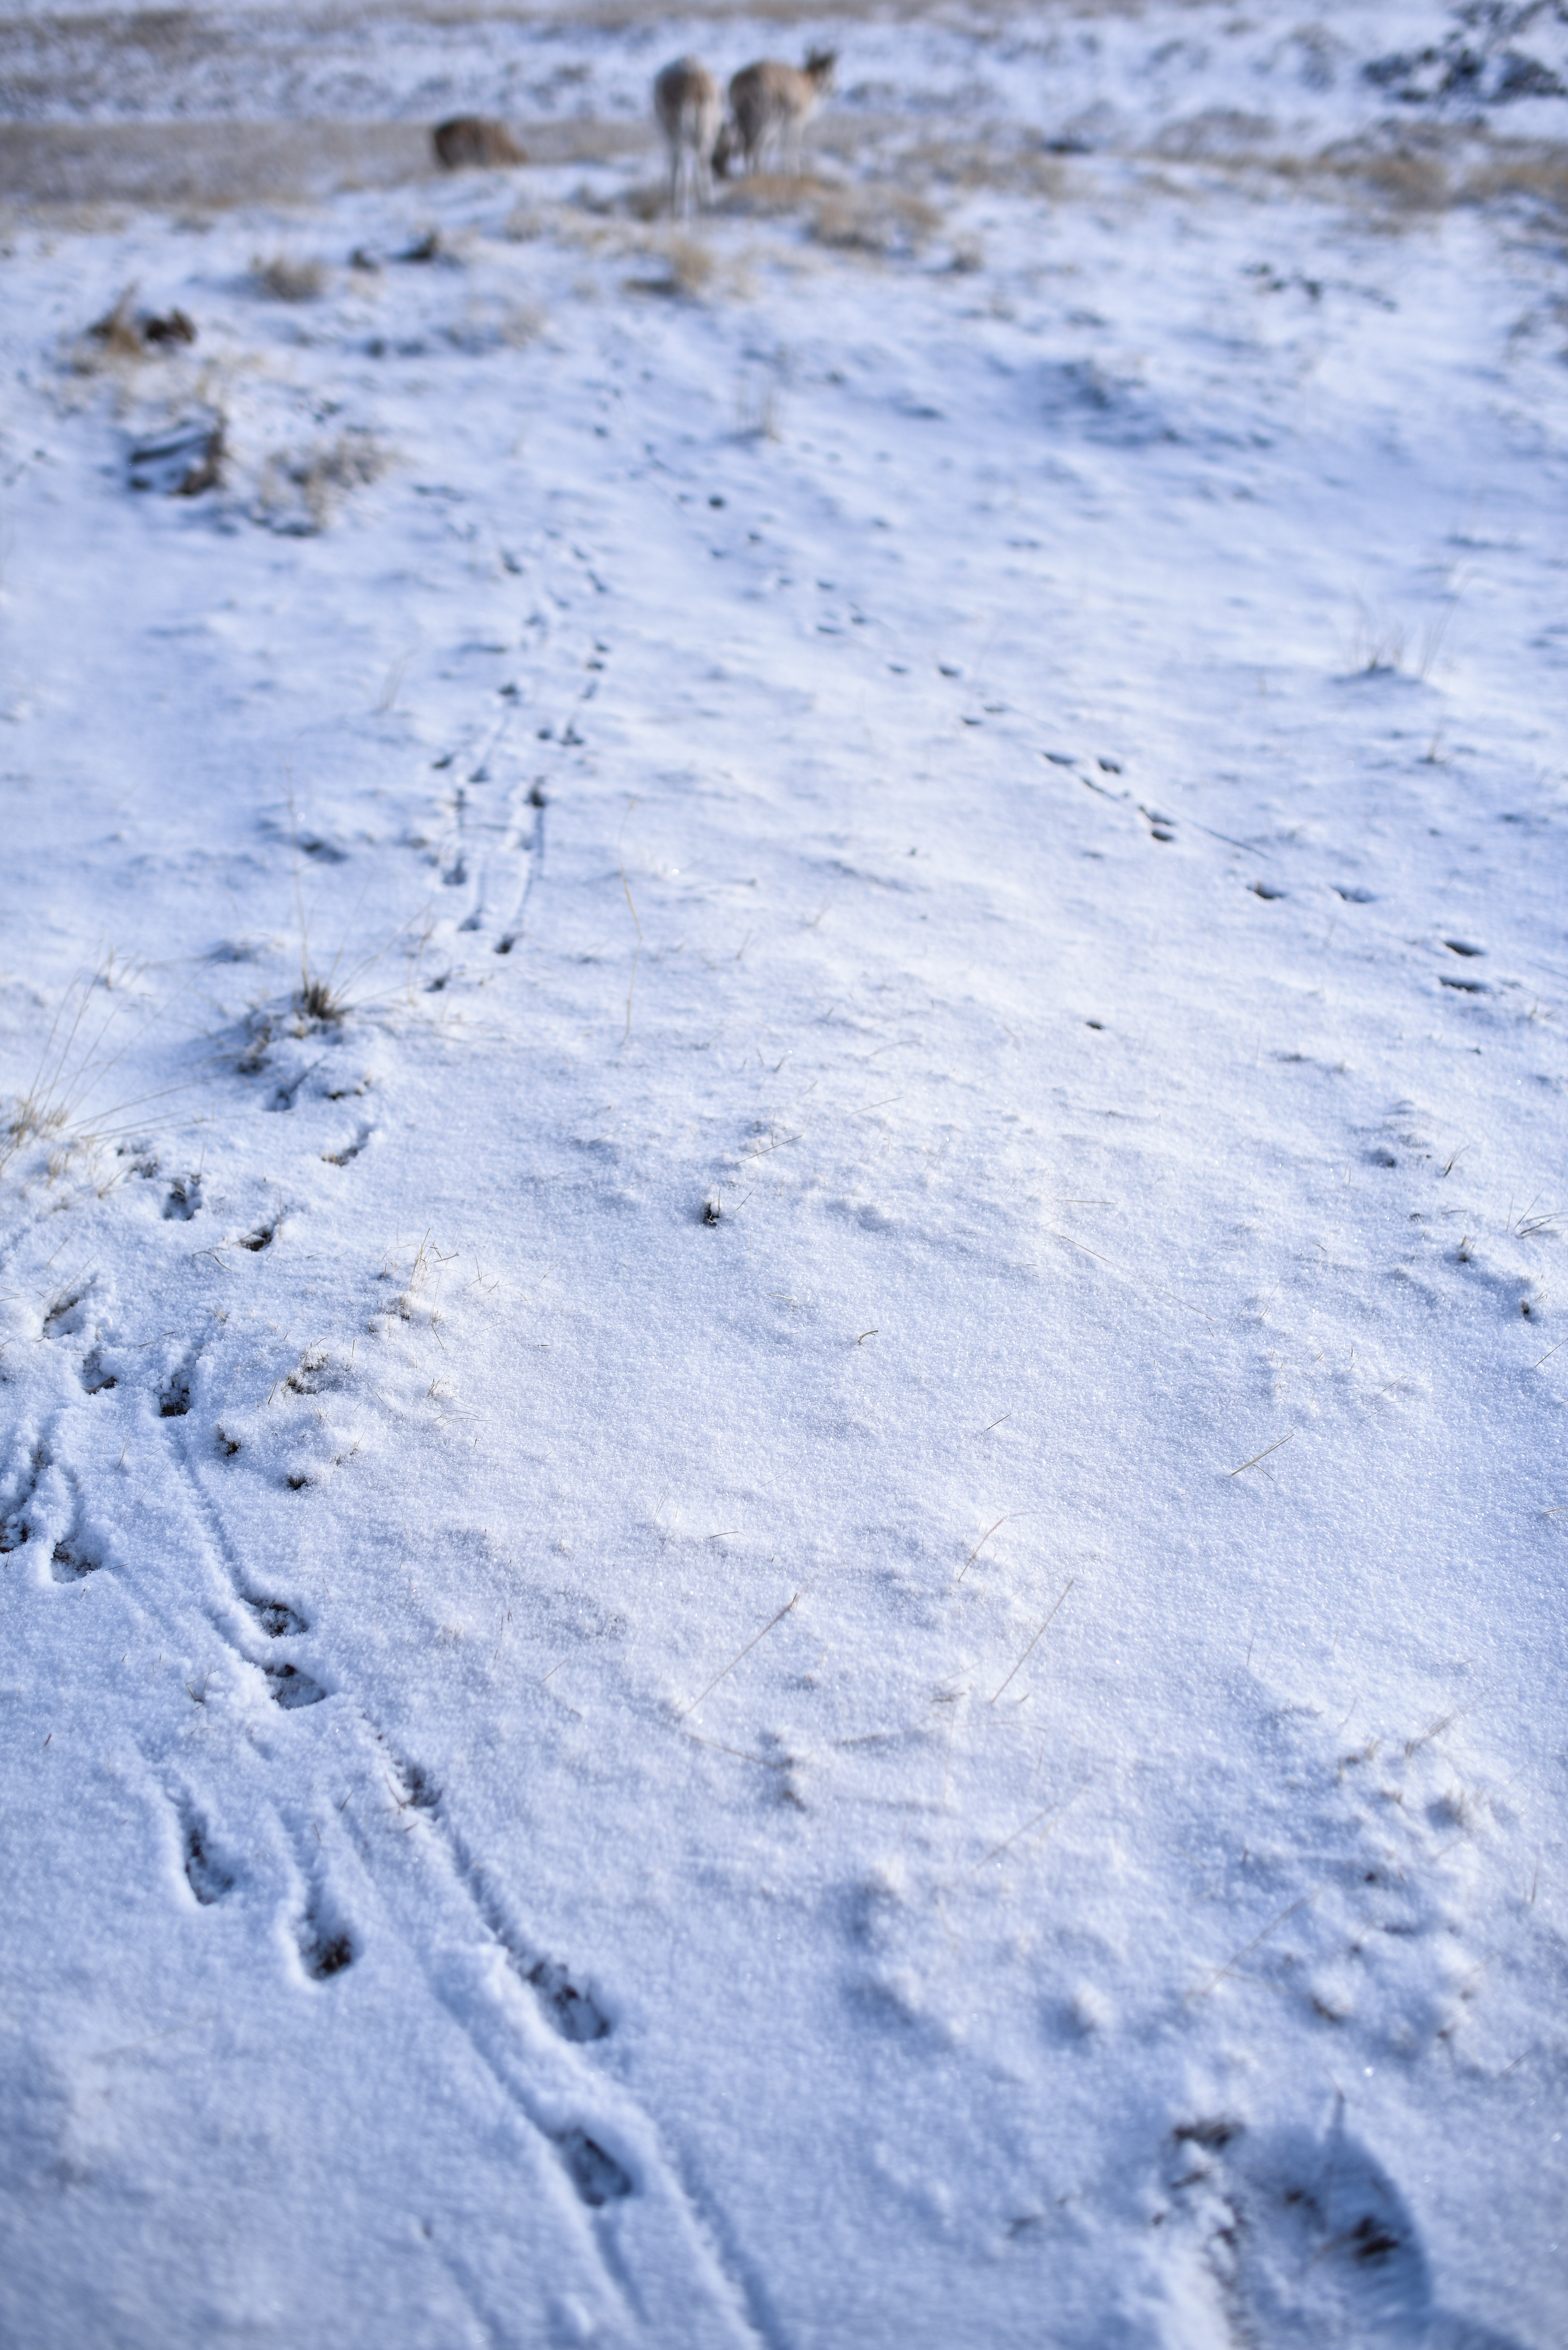 4月20日,一群迁徙藏羚羊在雪地上留下脚印